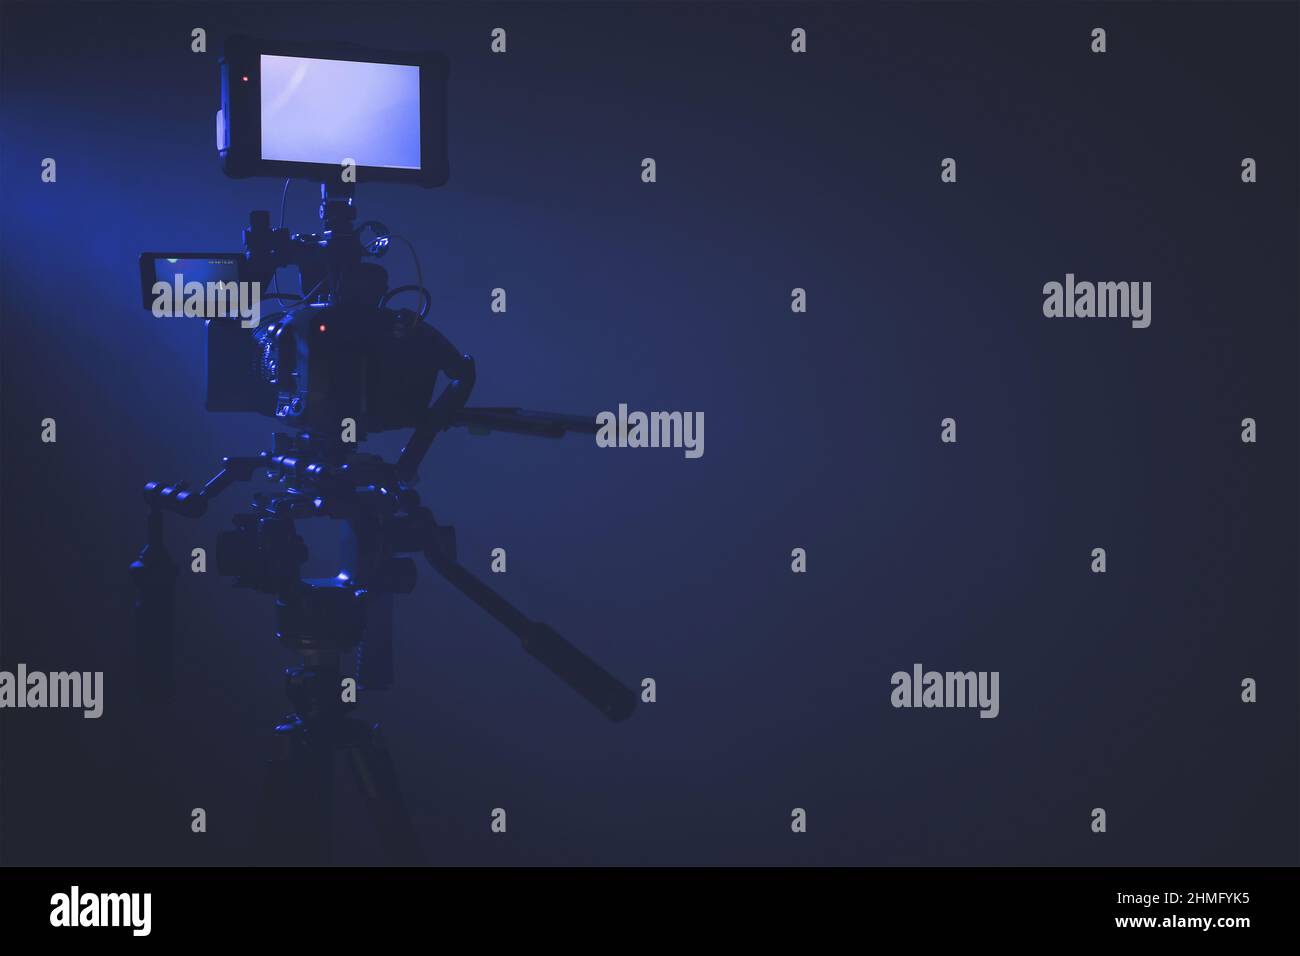 Moderna fotocamera digitale con display esterno che si trova su un cavalletto all'interno dello studio illuminato in blu scuro. Spazio copia lato destro Foto Stock